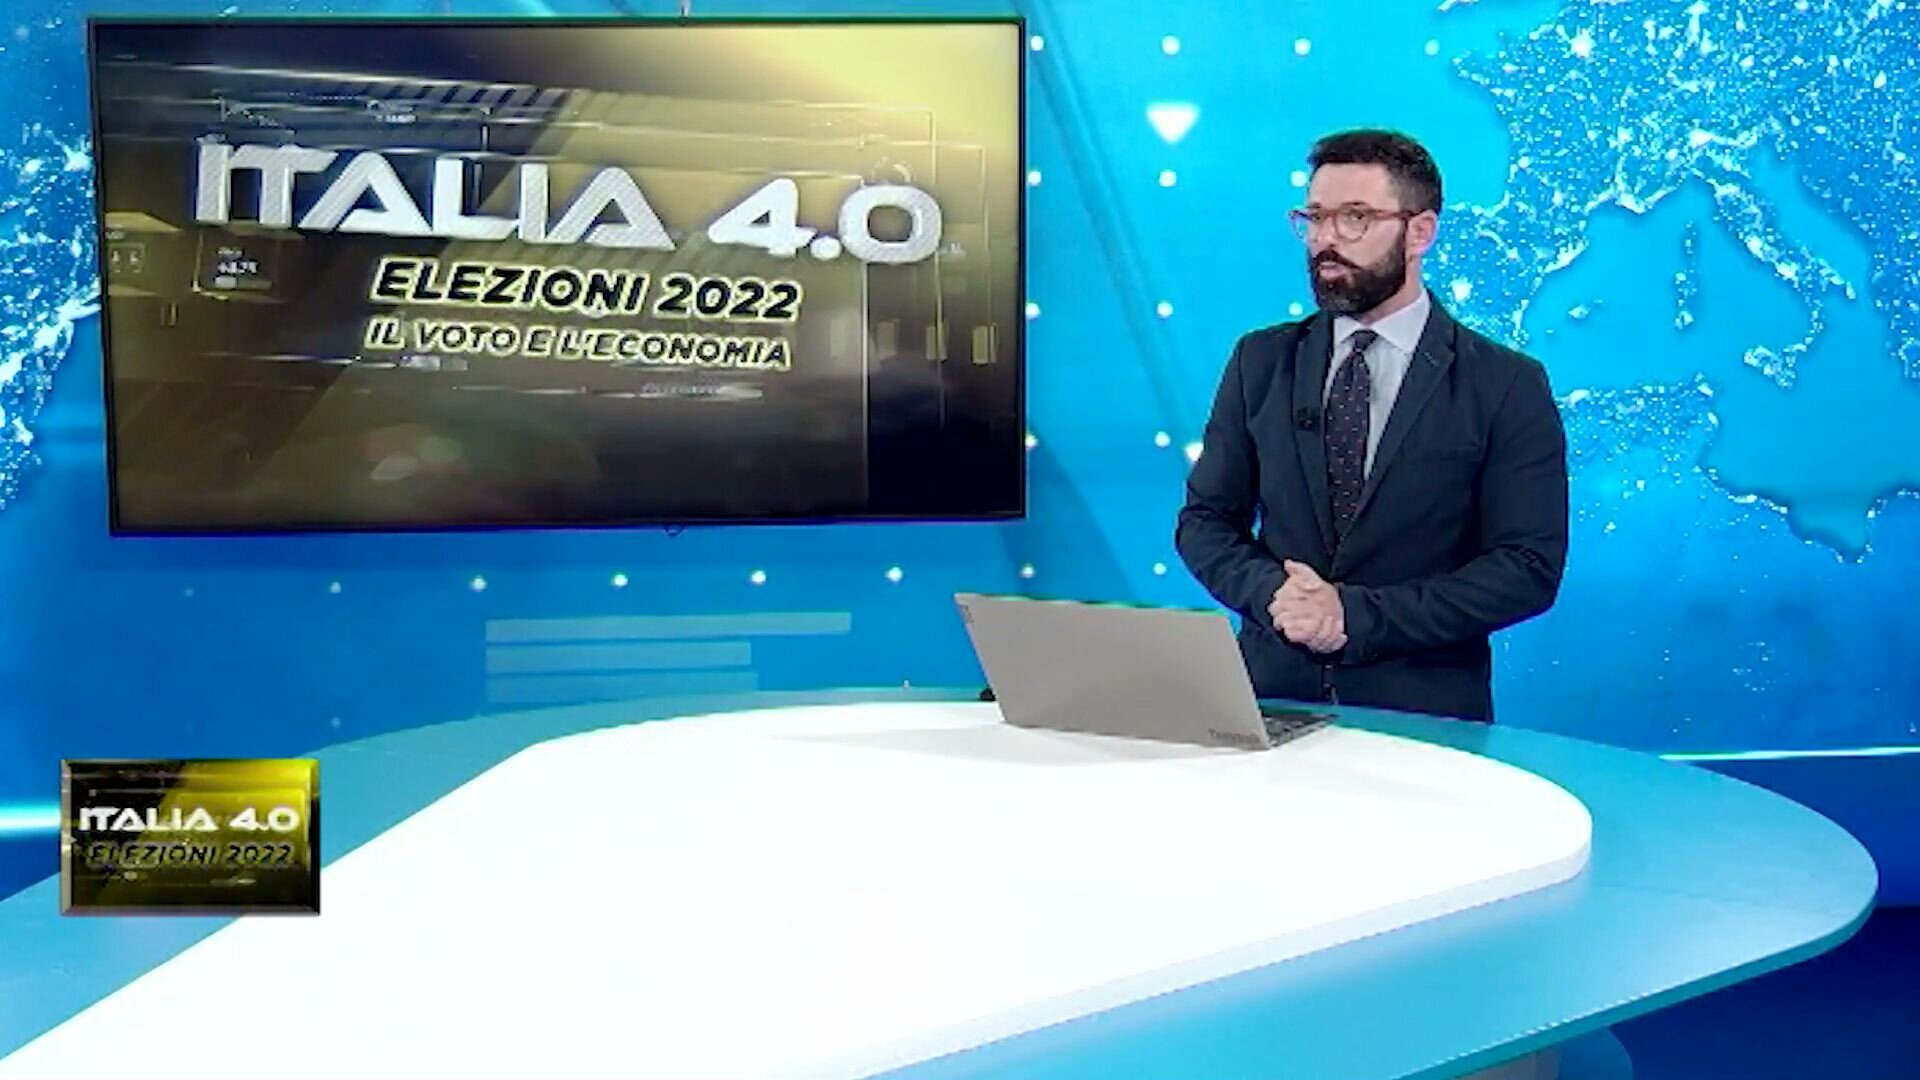 Italia 4.0 elezioni 2022 - Industria conserviera: rincari fuori controllo, l’appello al prossimo governo